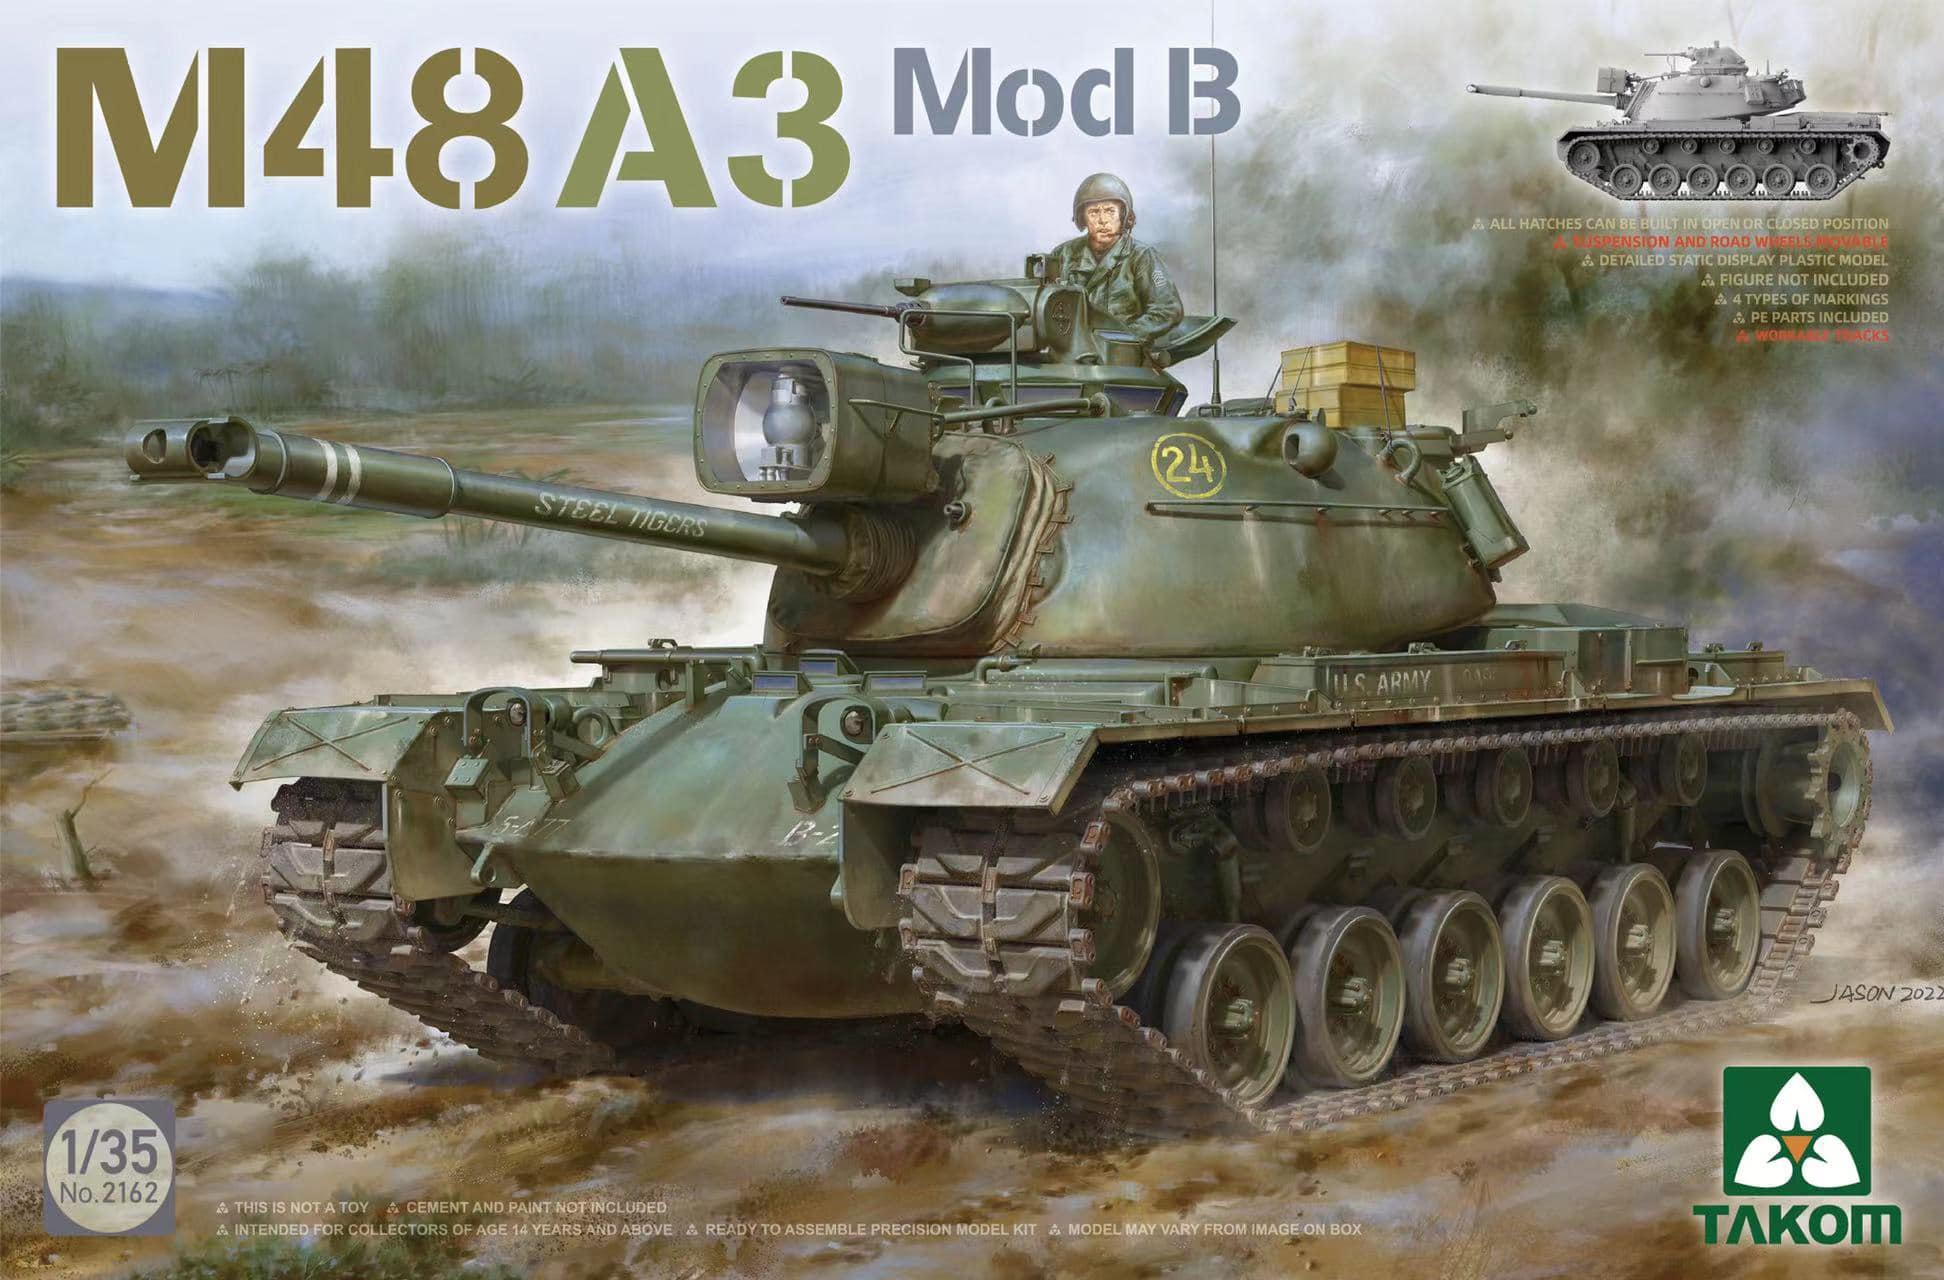 1/35 M48A3 Mod. B パットン 主力戦車 - ウインドウを閉じる